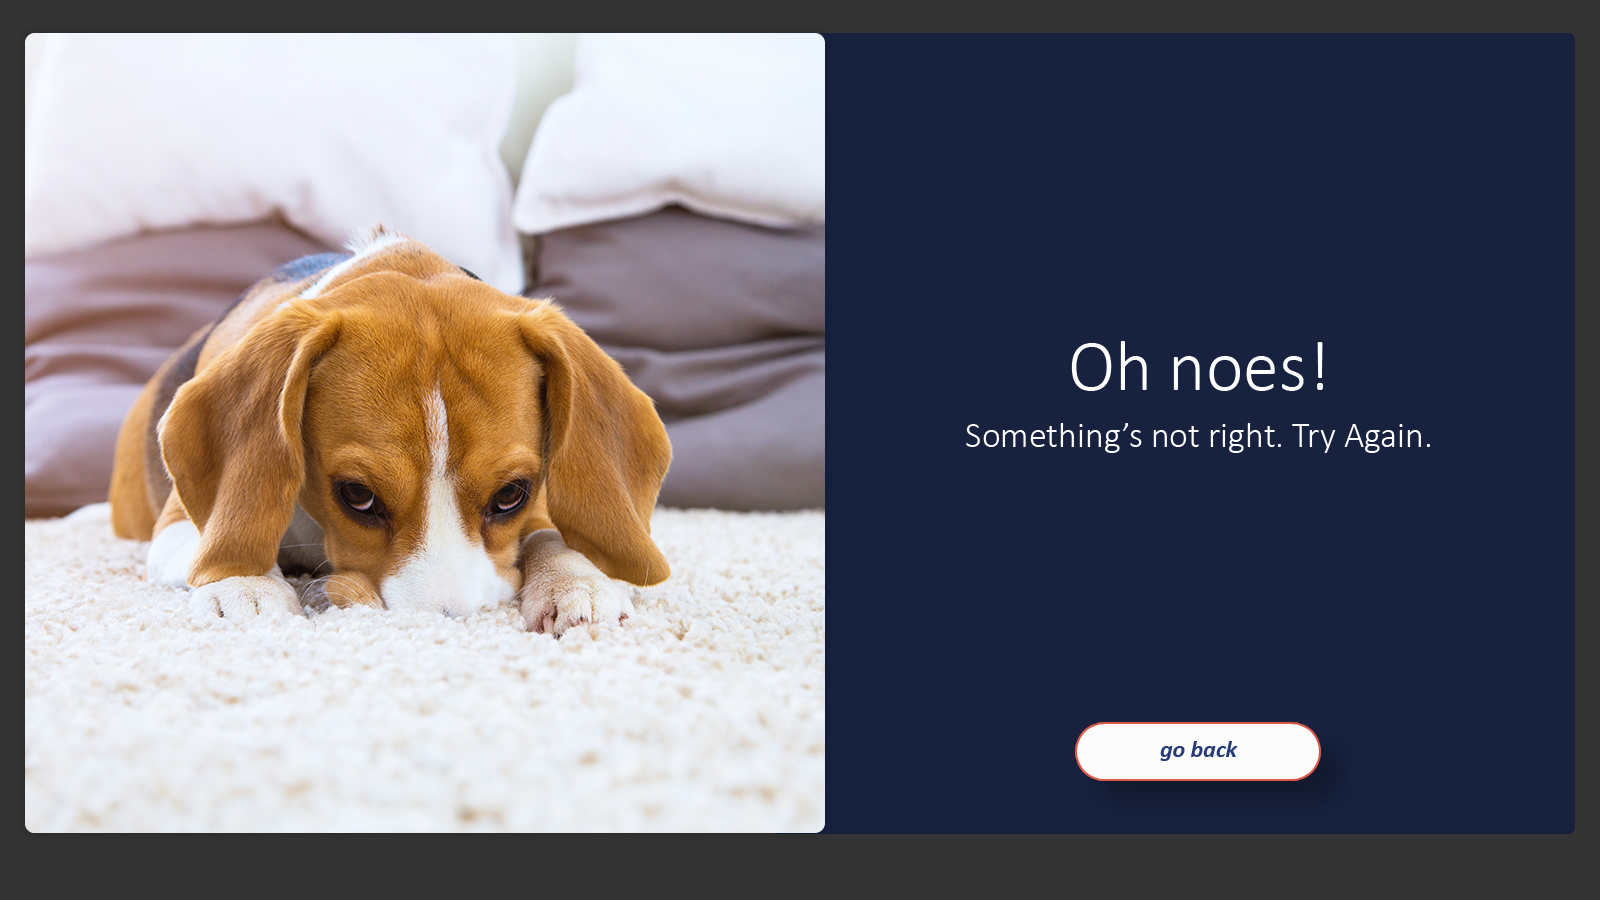 a feedback slide featuring a sad puppy